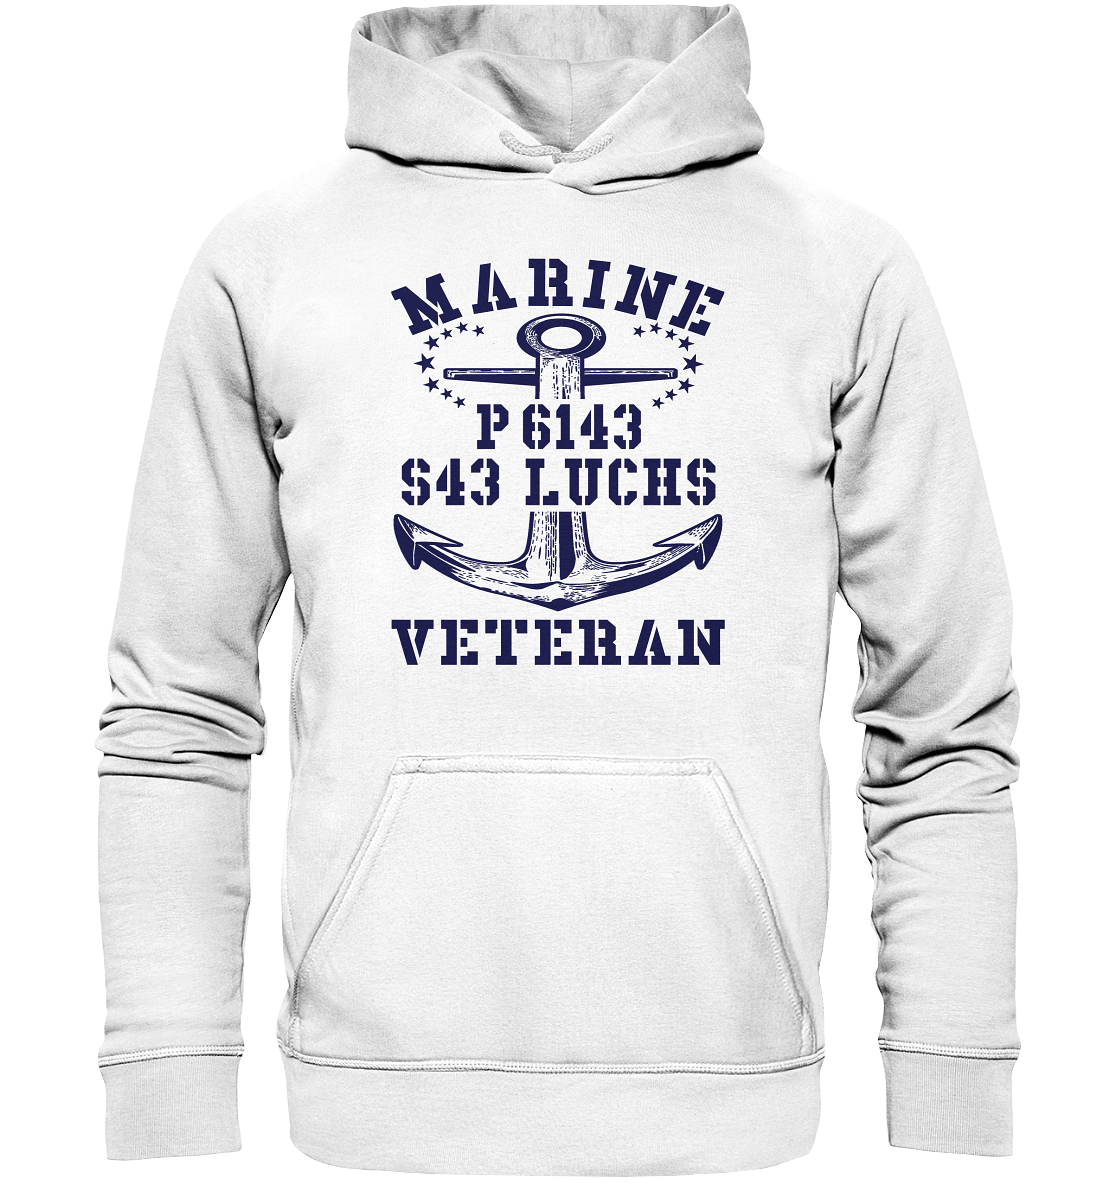 P6143 S43 LUCHS Marine Veteran - Basic Unisex Hoodie